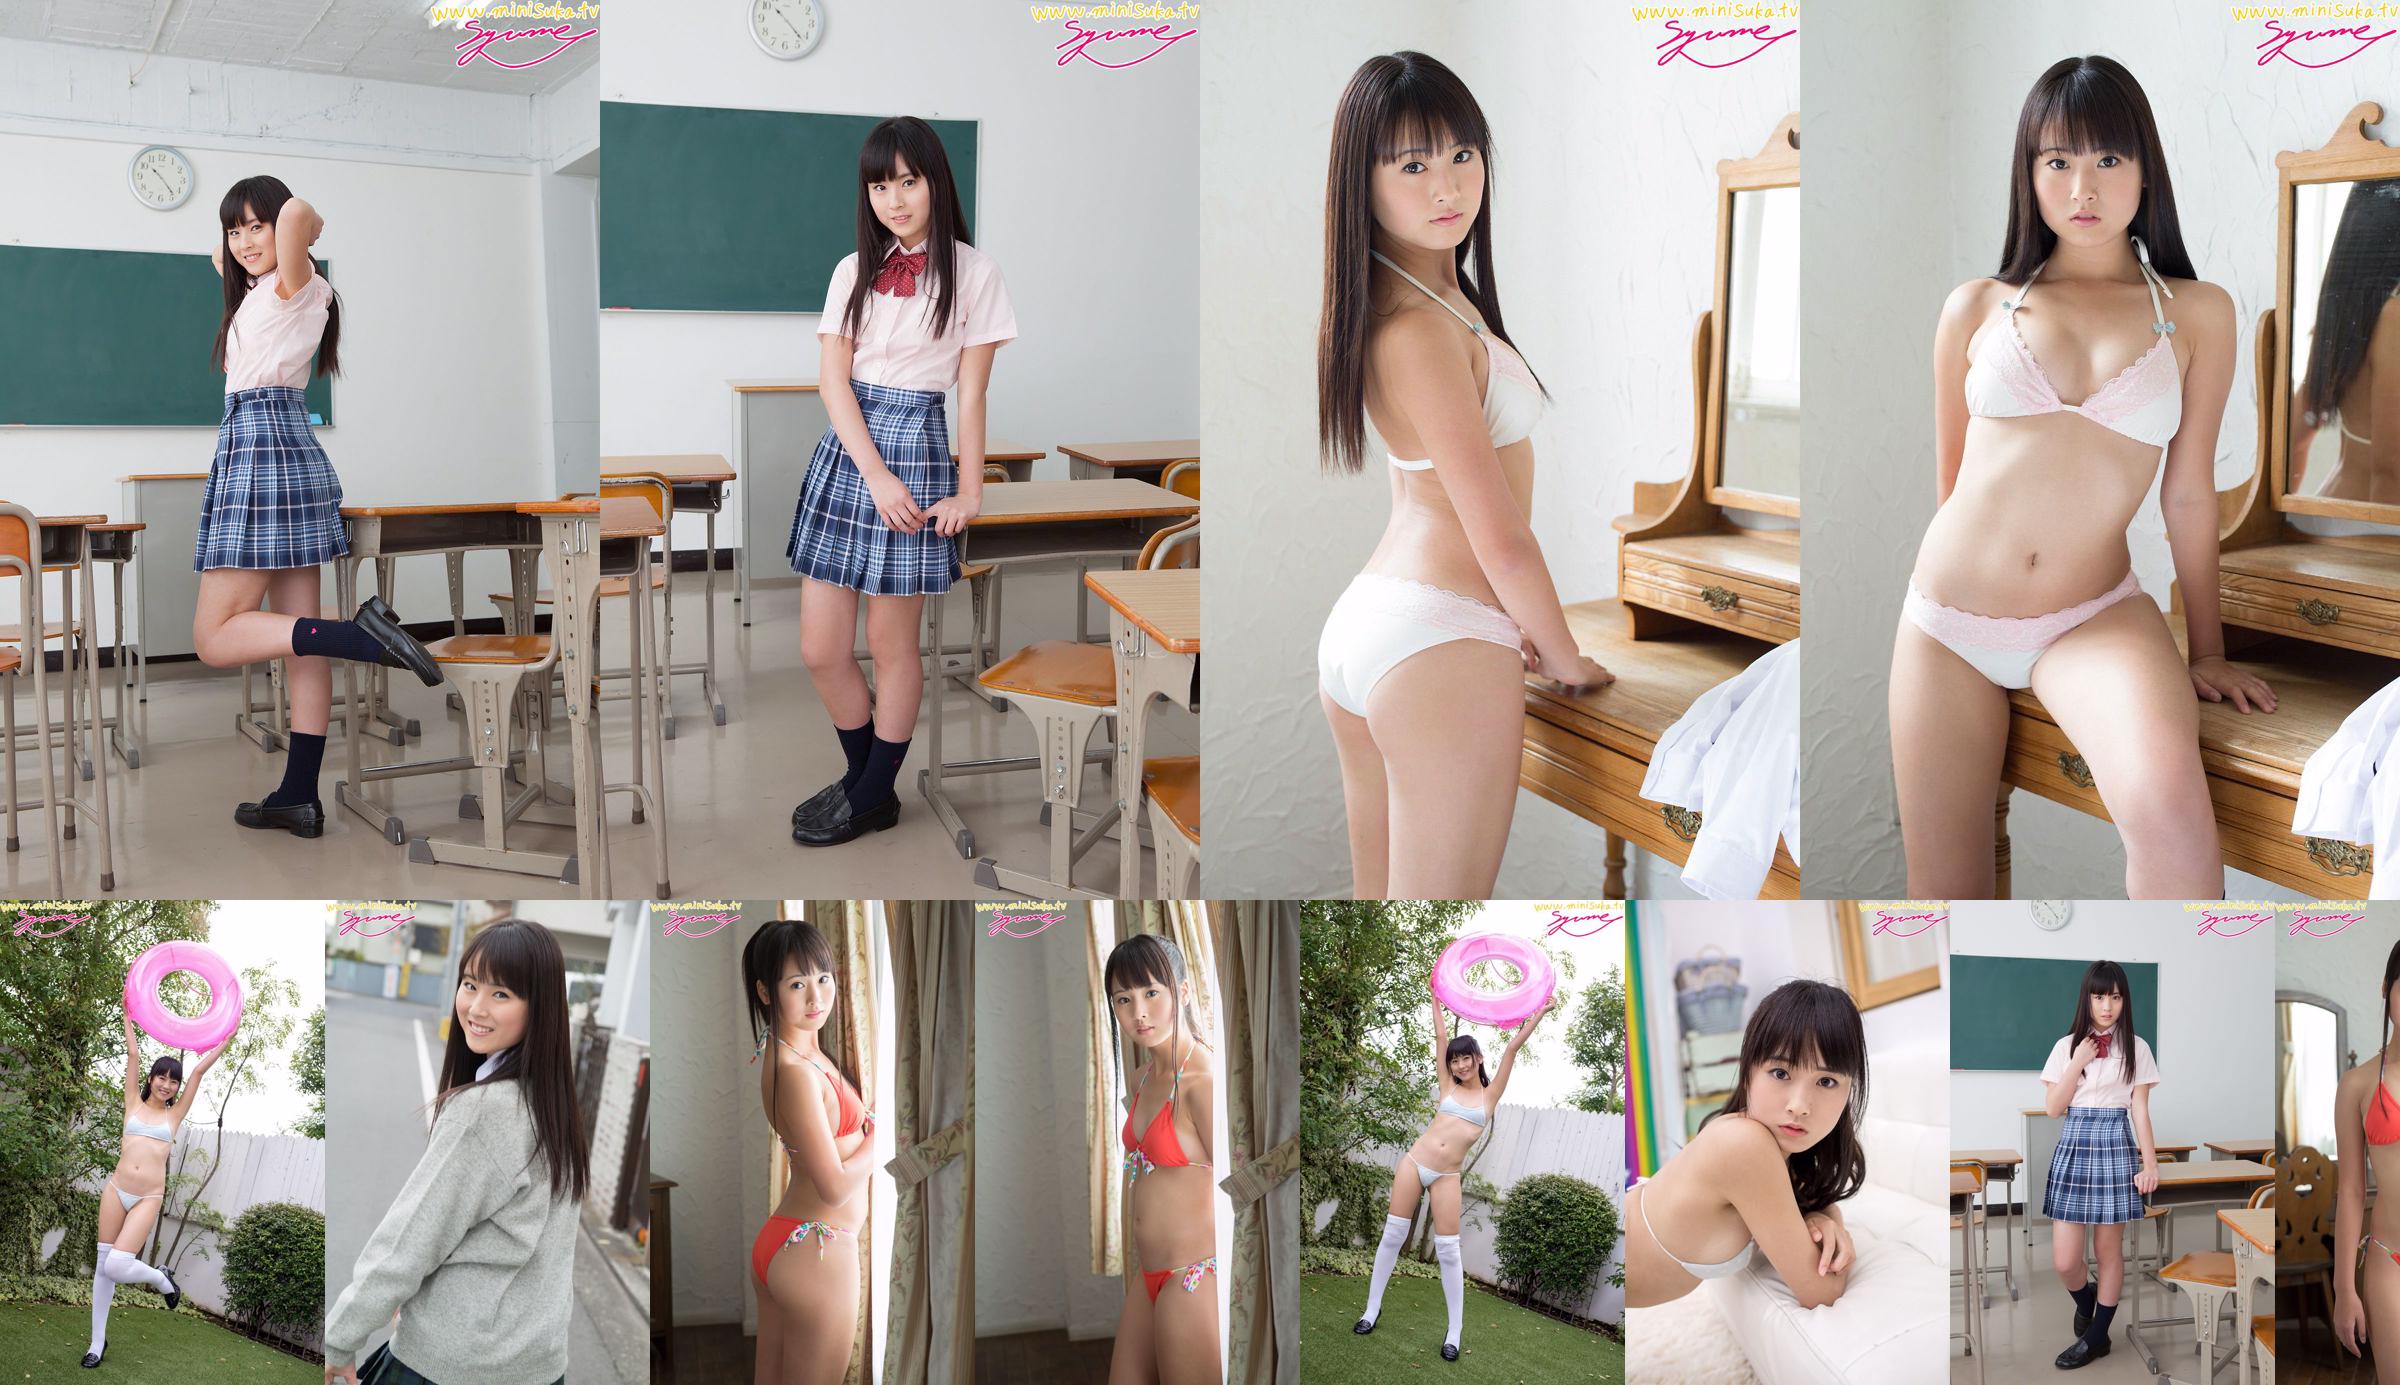 ยูเมะชินโจนักเรียนมัธยมหญิงประจำการ [Minisuka.tv] No.0221d9 หน้า 1